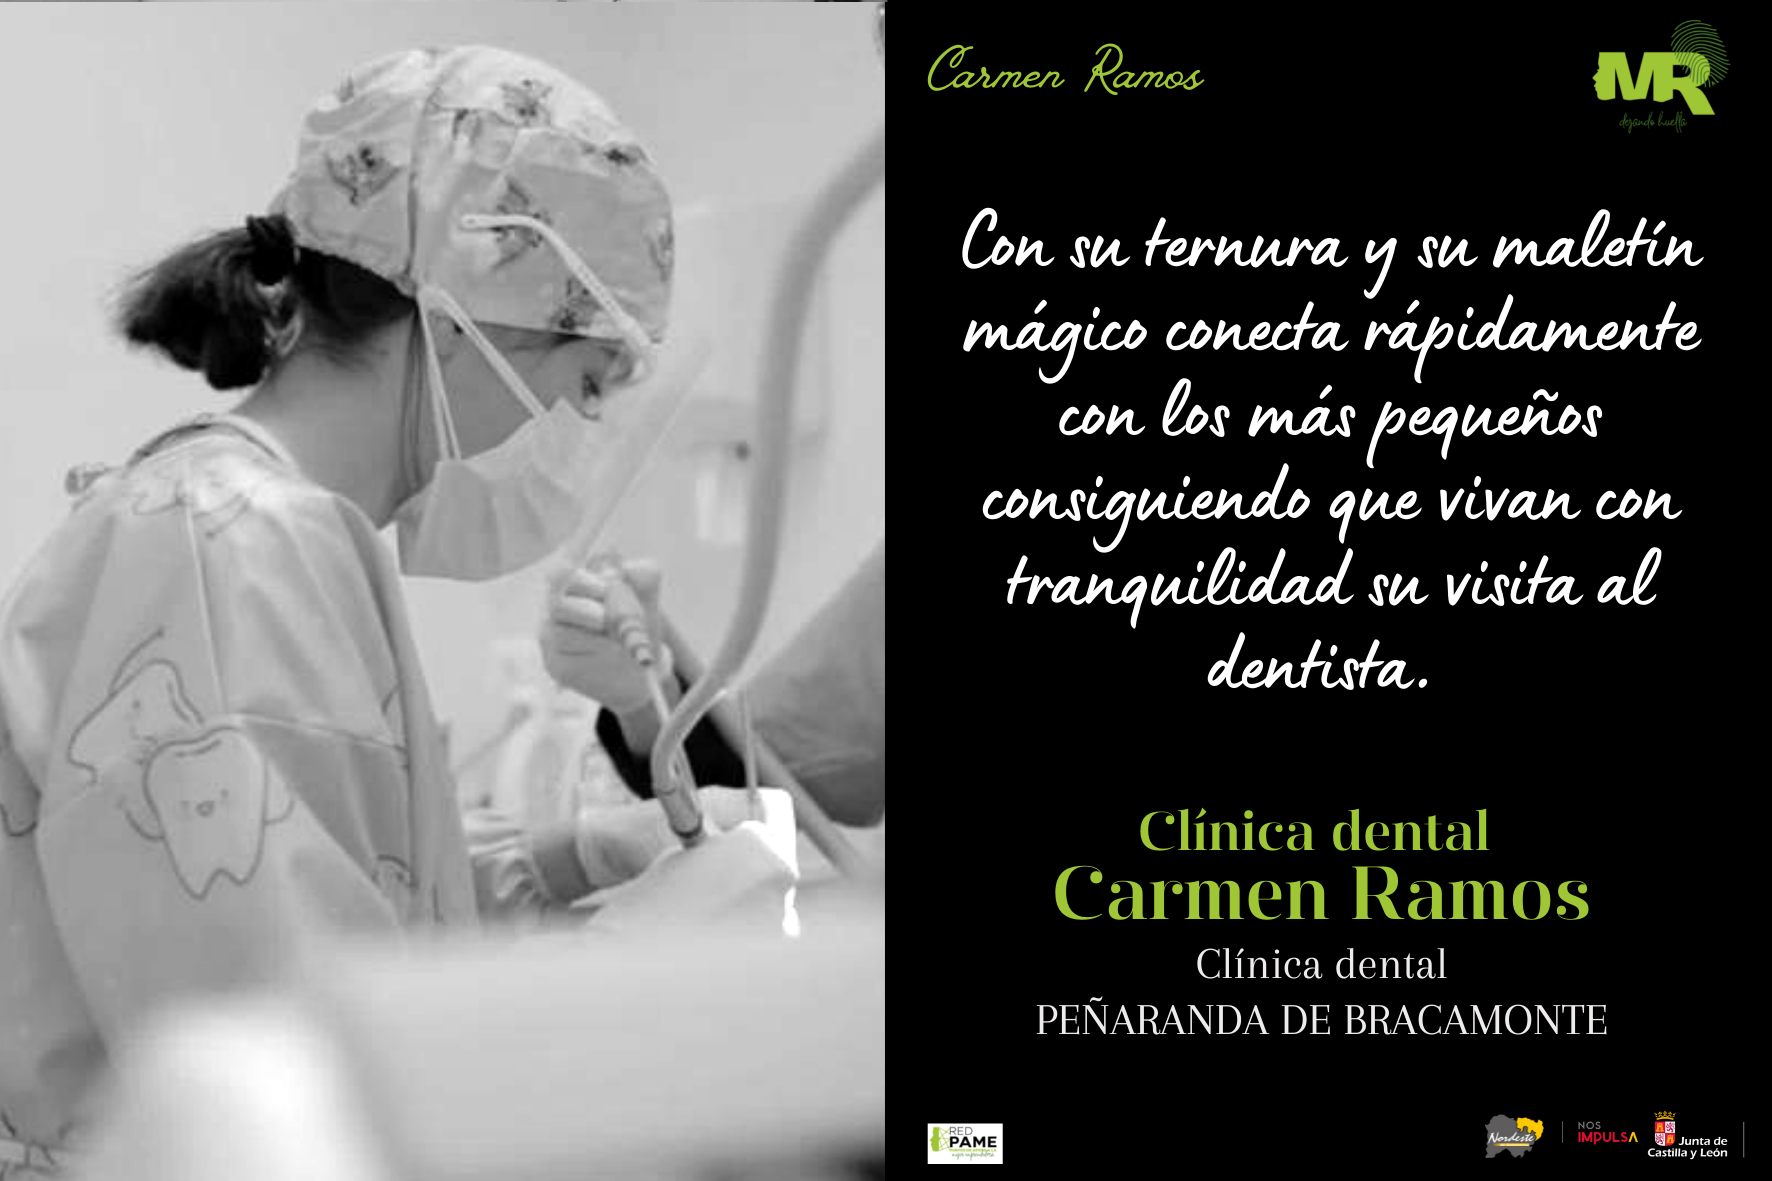 Carmen ClinicaDental